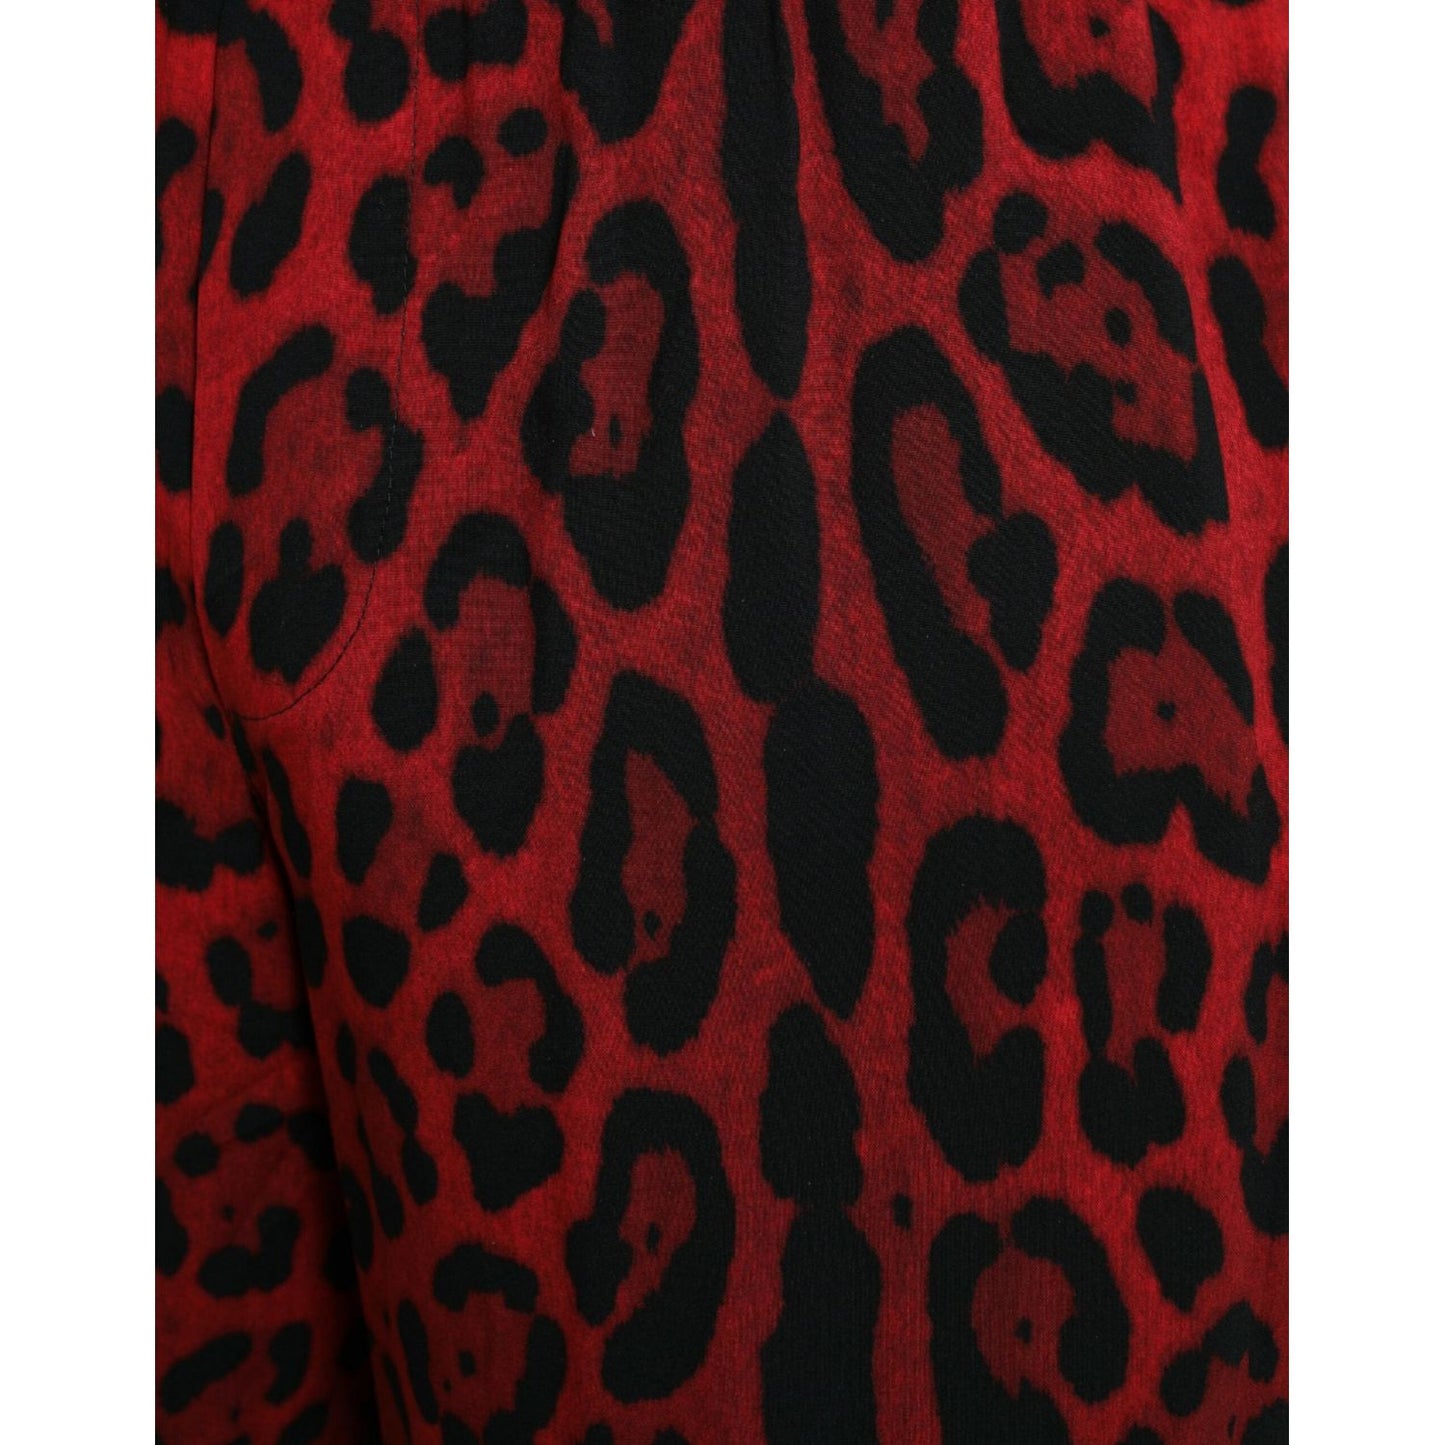 Dolce & Gabbana Red Leopard Print Viscose Bermuda Shorts red-leopard-print-viscose-bermuda-shorts